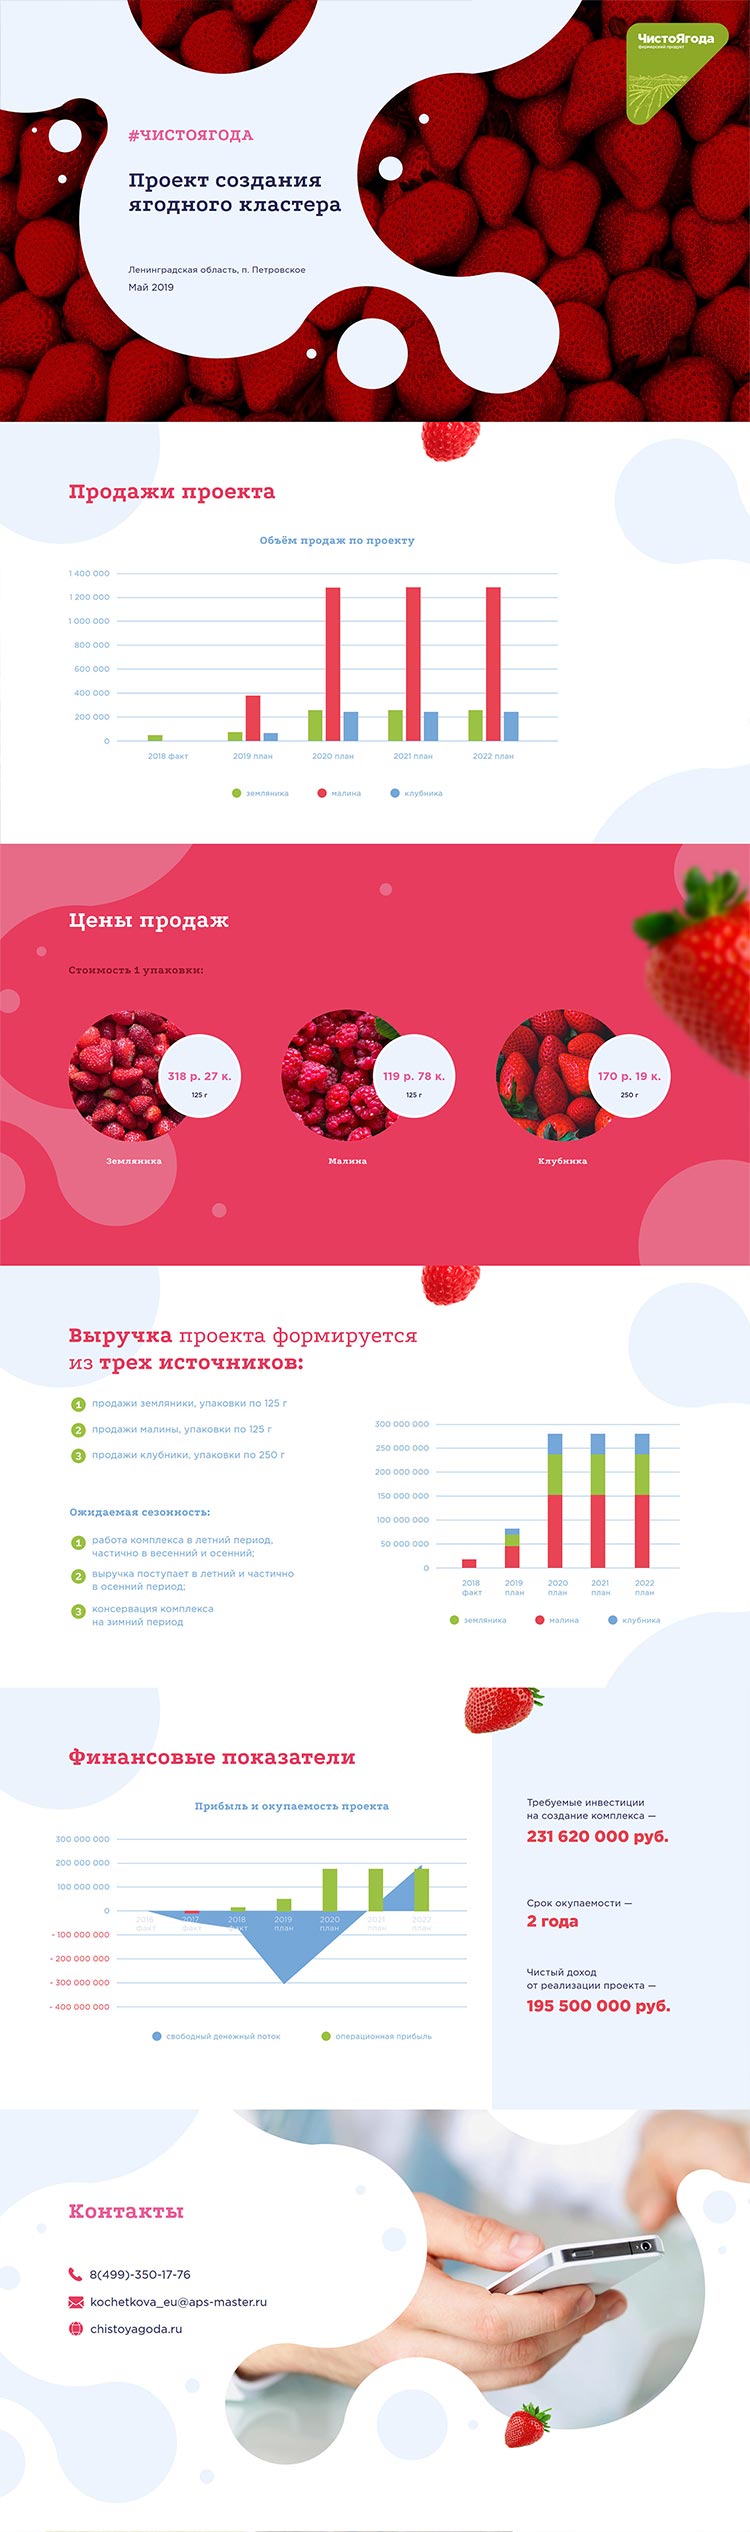 Презентация проекта создания ягодного кластера для привлечения инвесторов для клиента